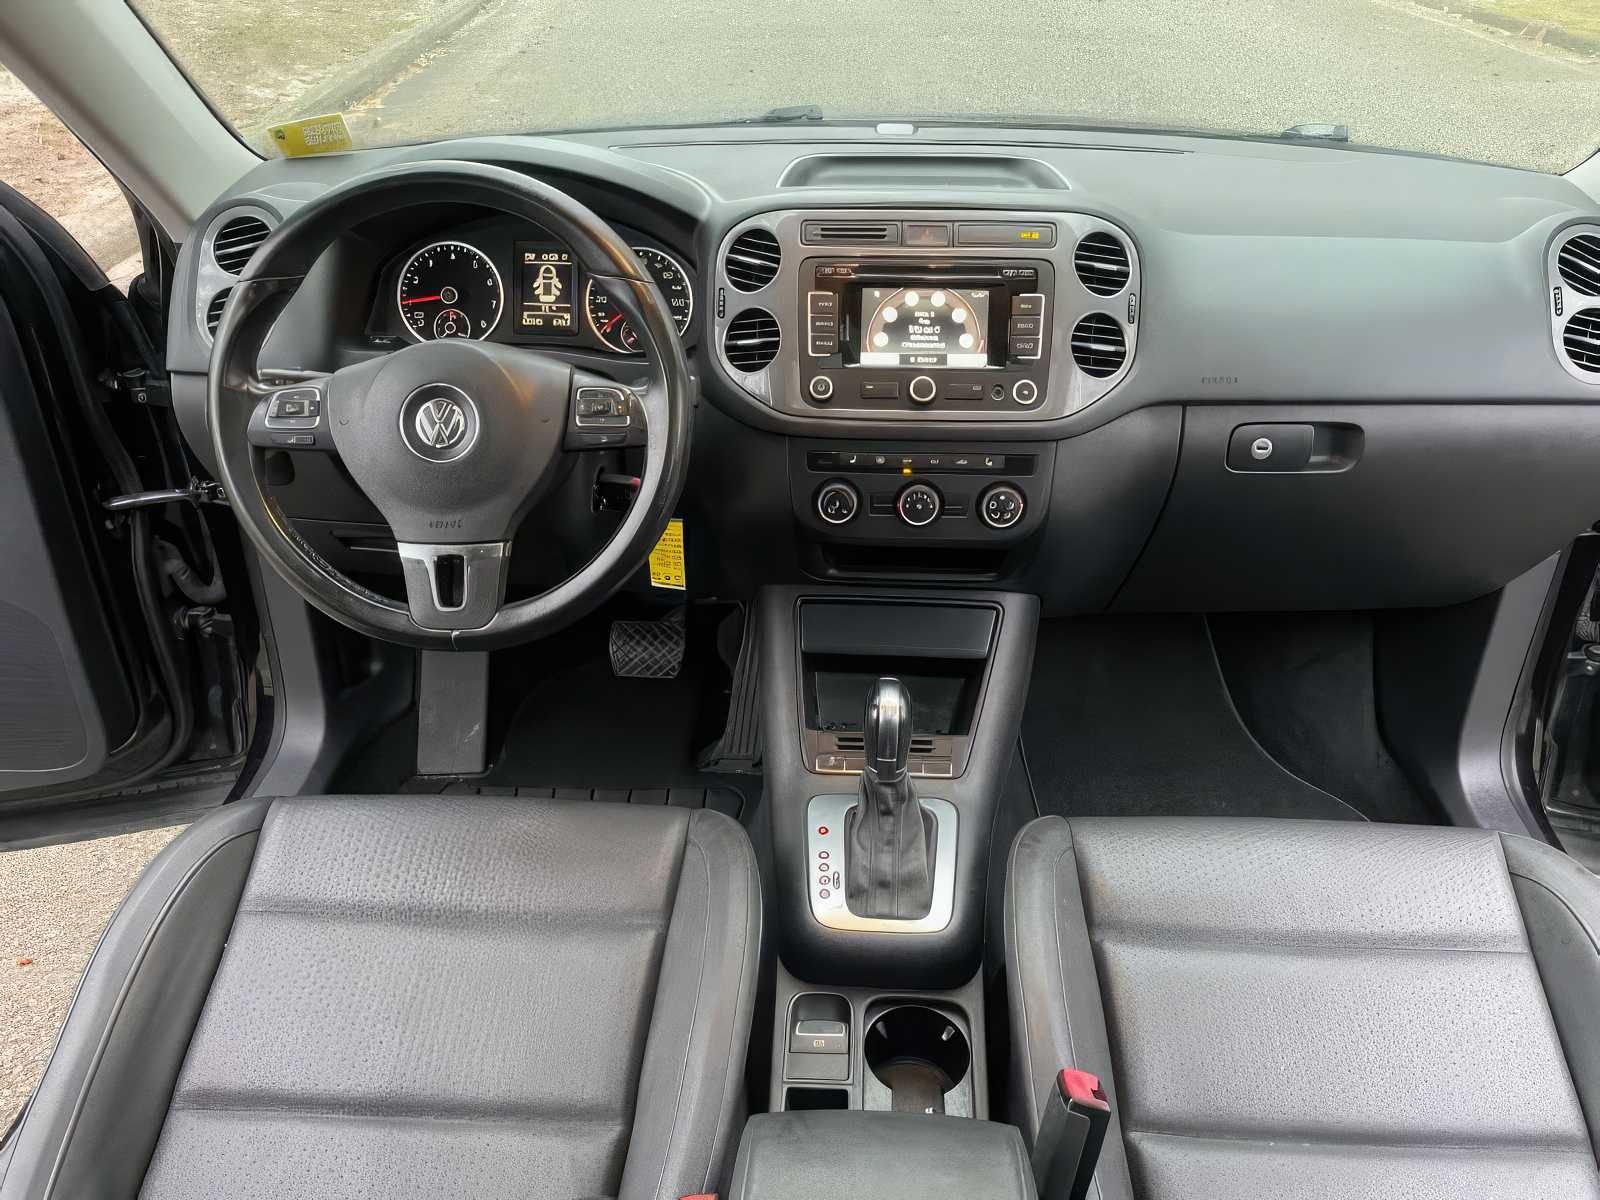 2013 Volkswagen Tiguan SE